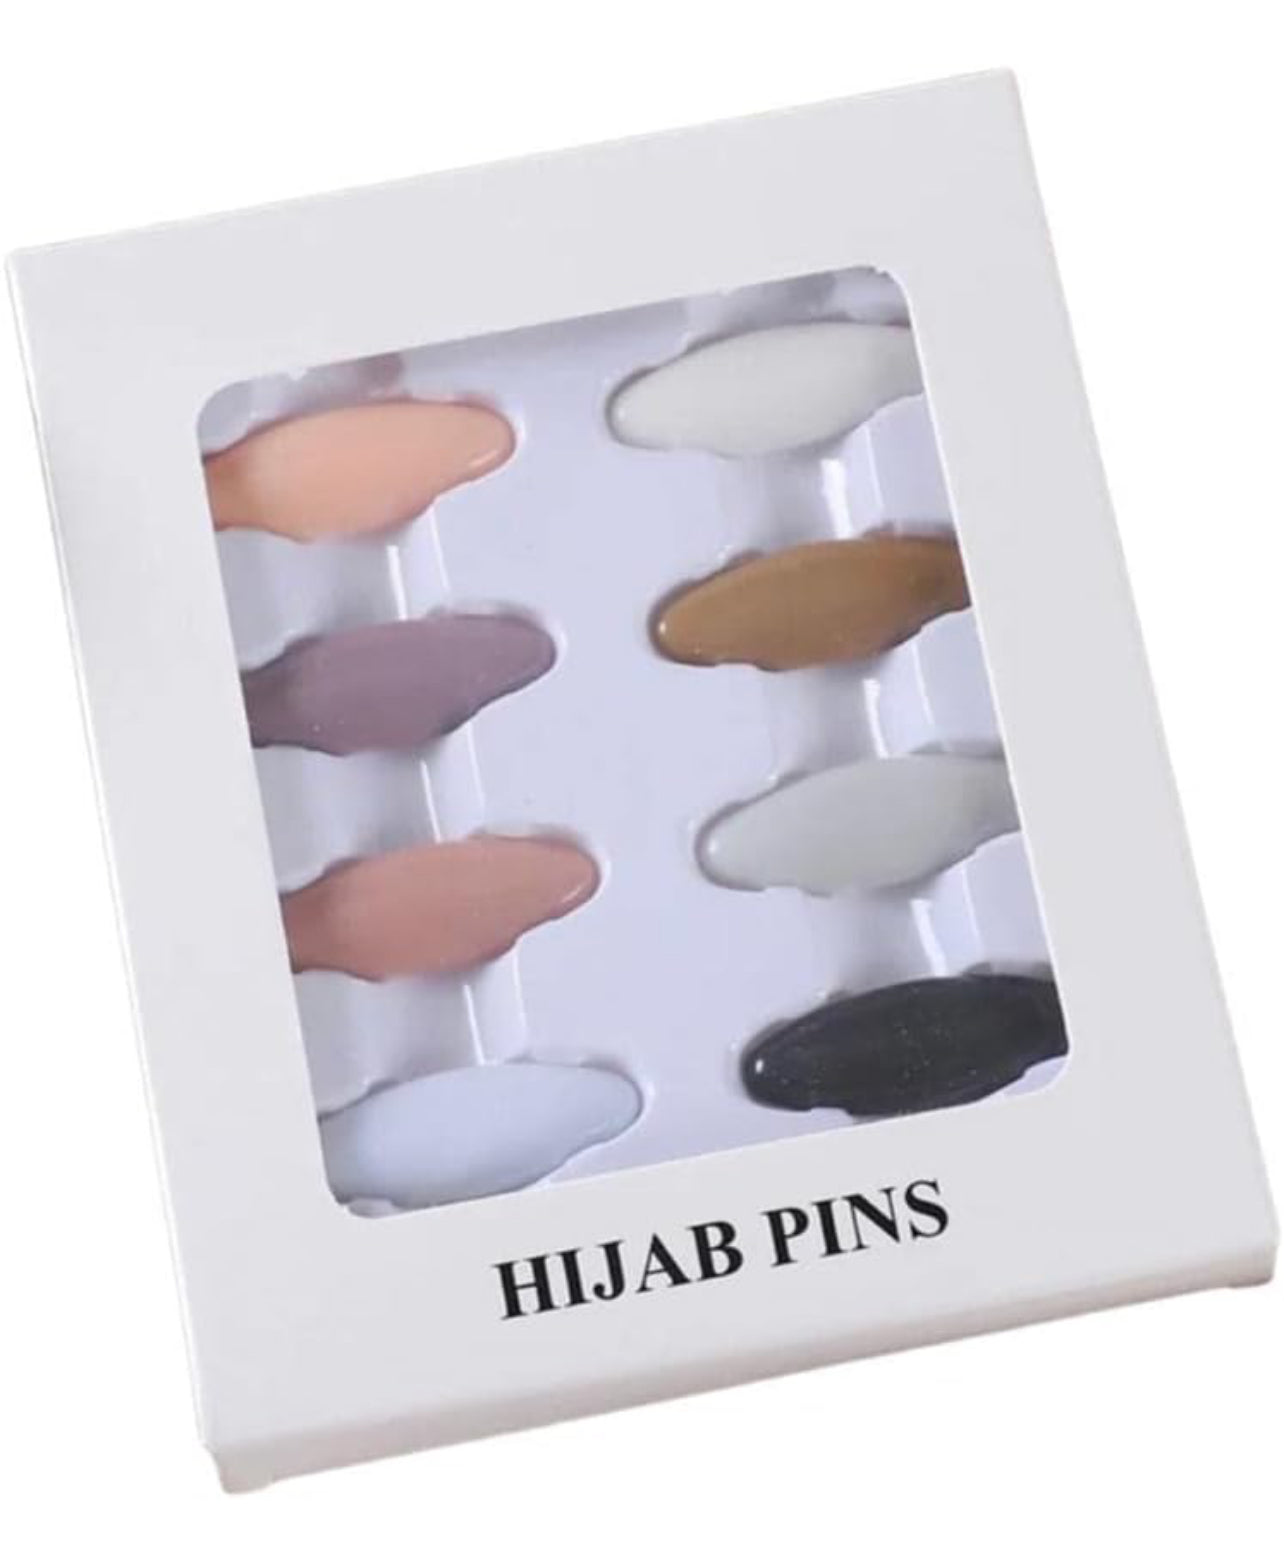 Hijab pins